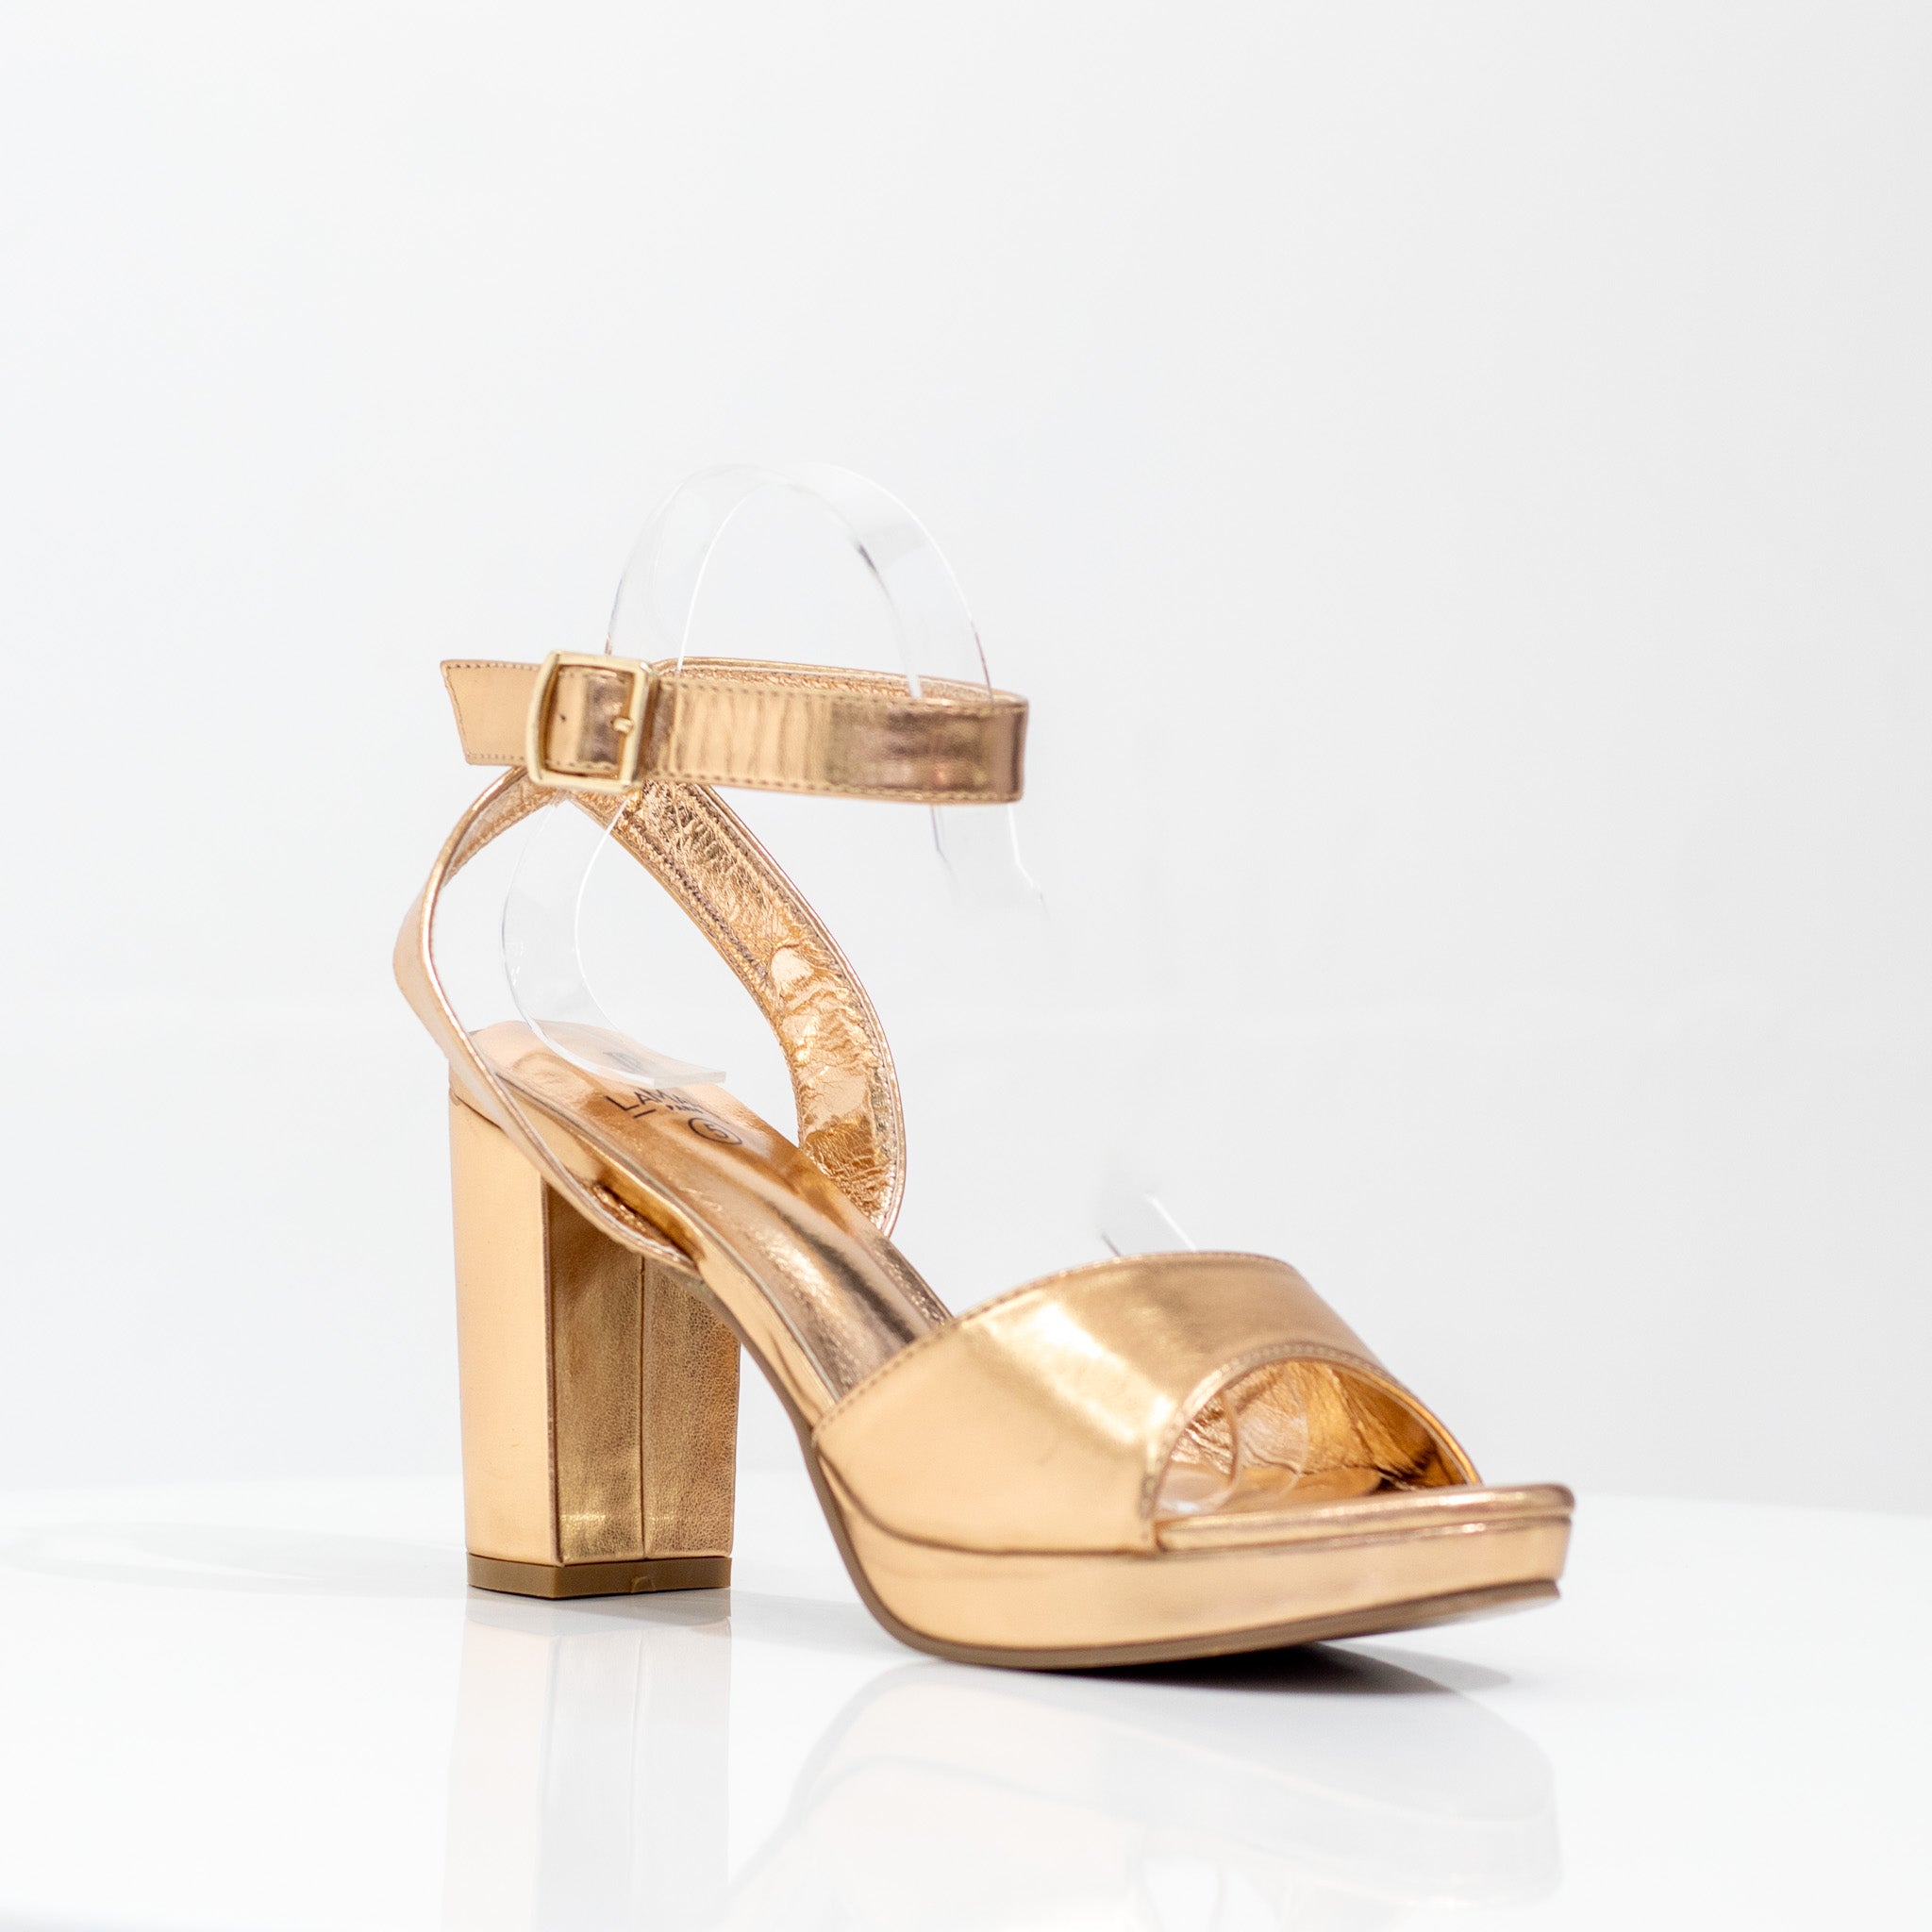 gold one band sandal on platform heel